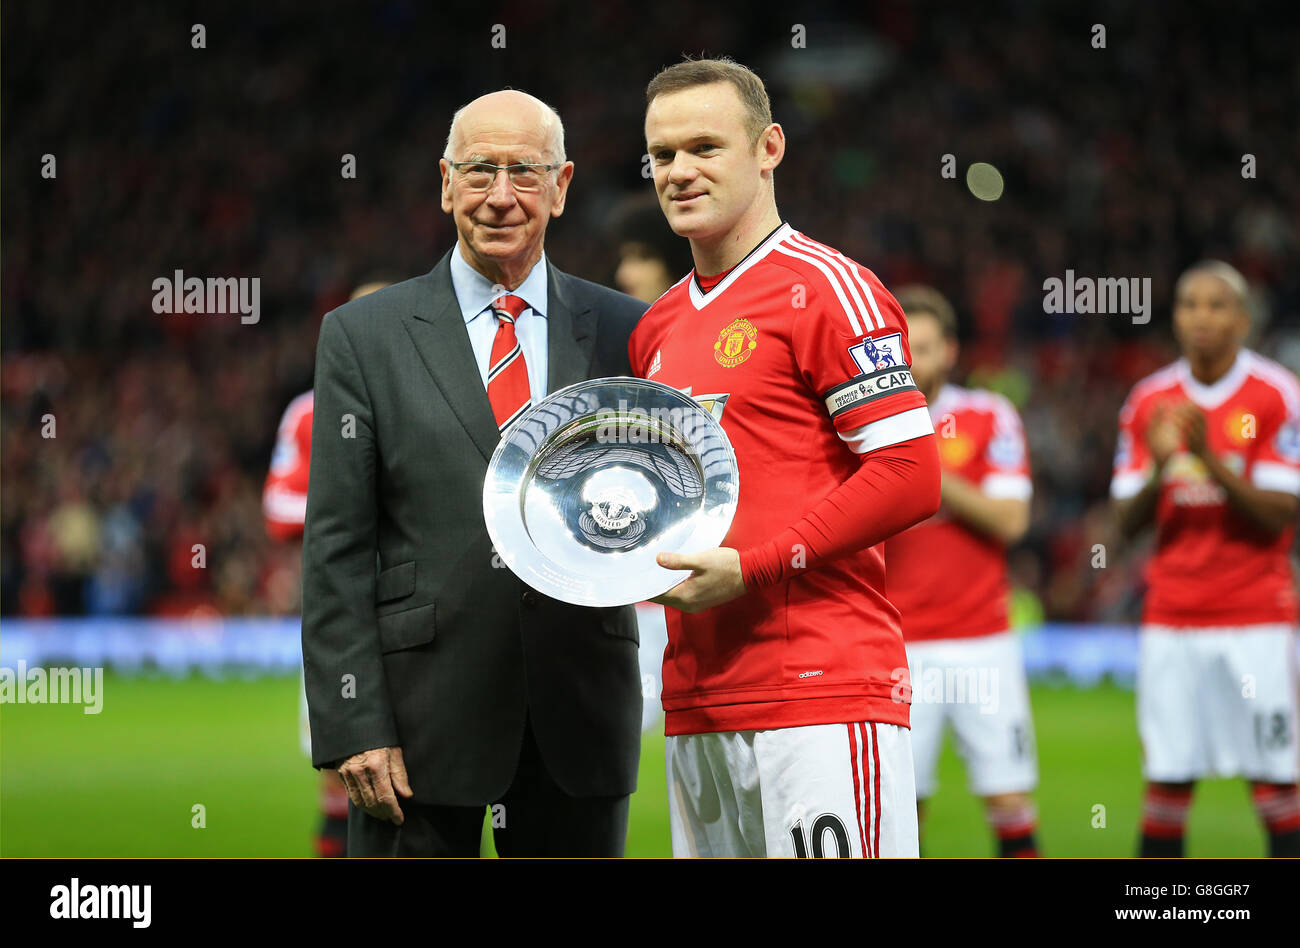 Sir Bobby Charlton présente Wayne Rooney de Manchester United avec un trophée marquant sa 500e apparition au club avant le match de la Barclays Premier League à Old Trafford, Manchester. Banque D'Images